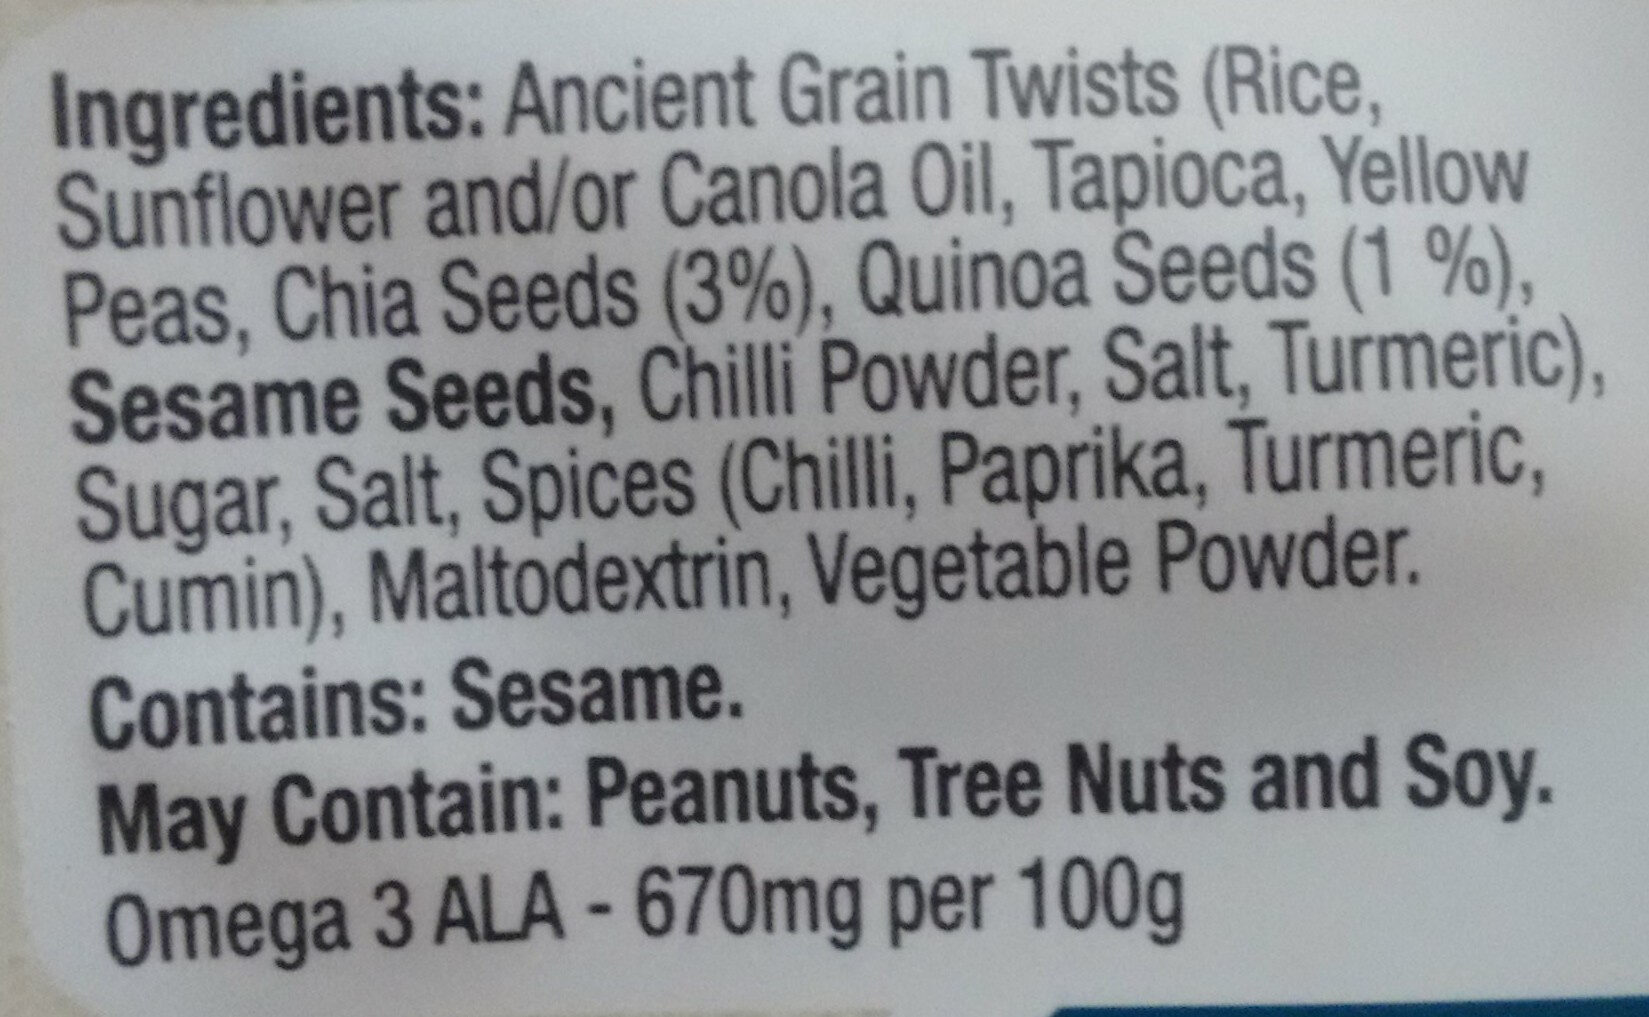 Ancient Grain Twists - Ingredients